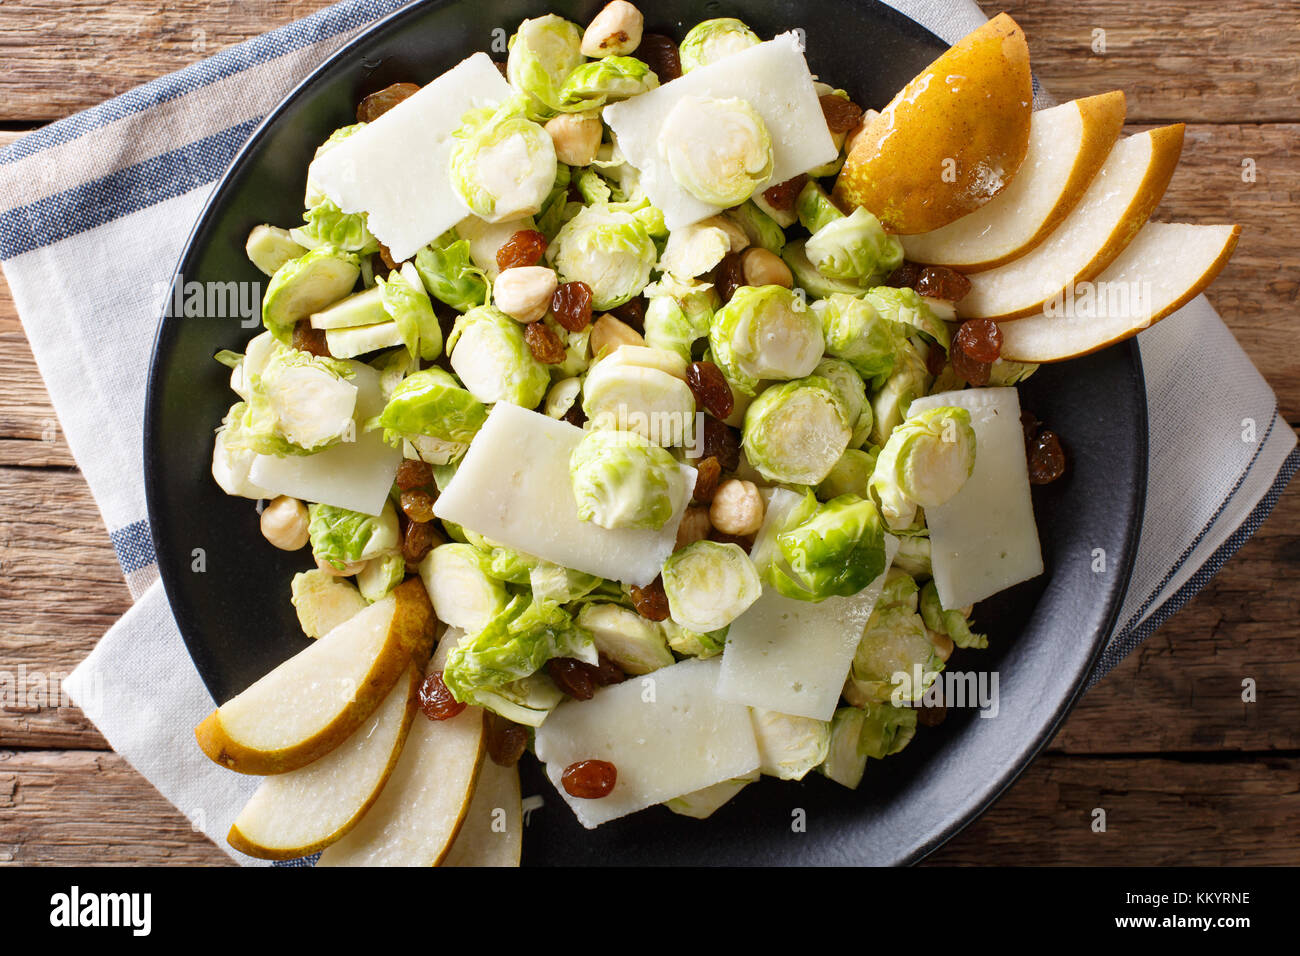 Salade de choux de bruxelles organique avec les noisettes, fromage, raisins et poires libre sur une plaque horizontale. haut Vue de dessus Banque D'Images